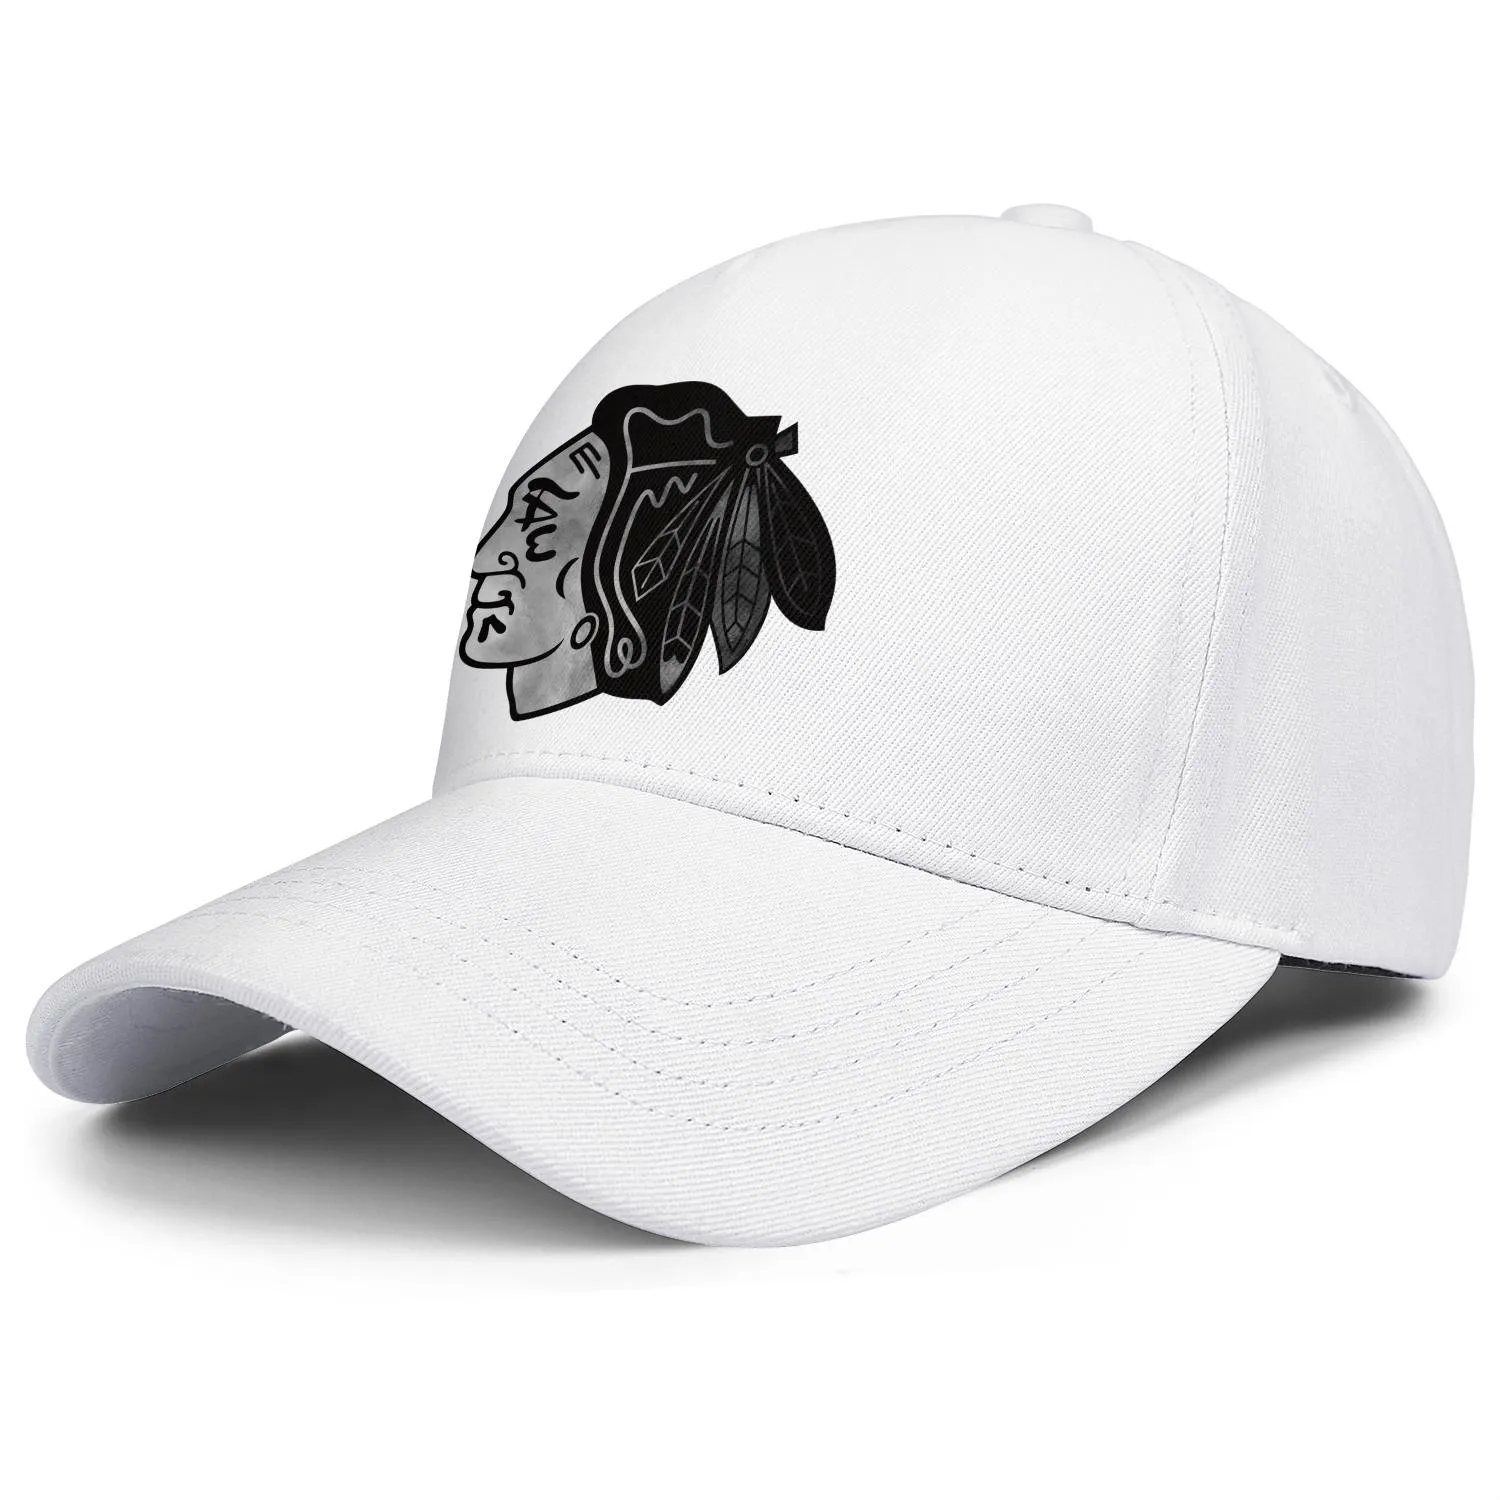 DesignNameg pour hommes et femmes casquette de camionneur réglable cool équipe vintage casquettes de baseball originales logo principal des Blackhawks de Chicago Ash 6481873